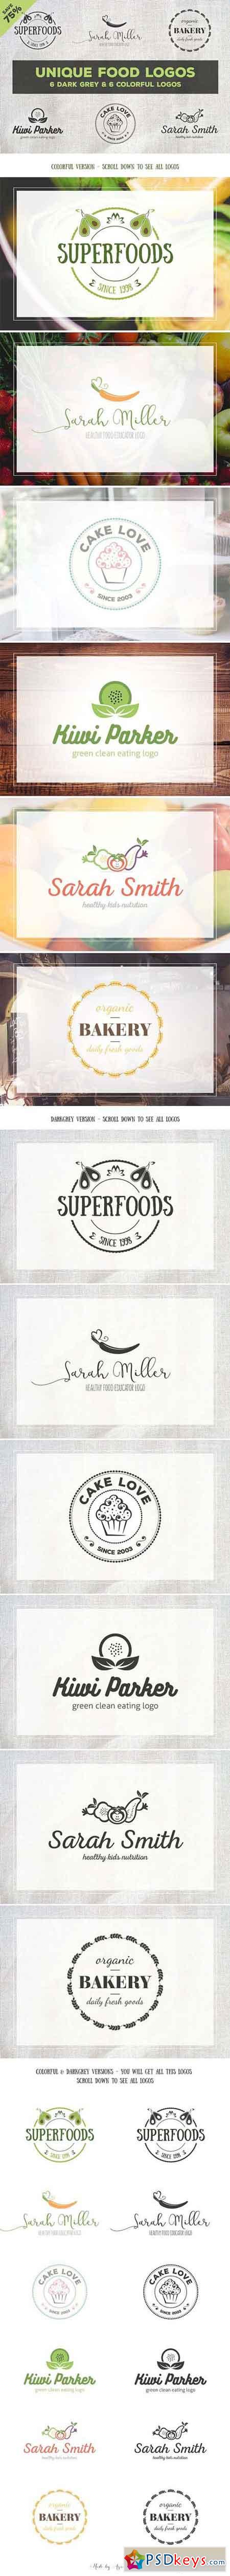 Unique Food Logos - Bundle